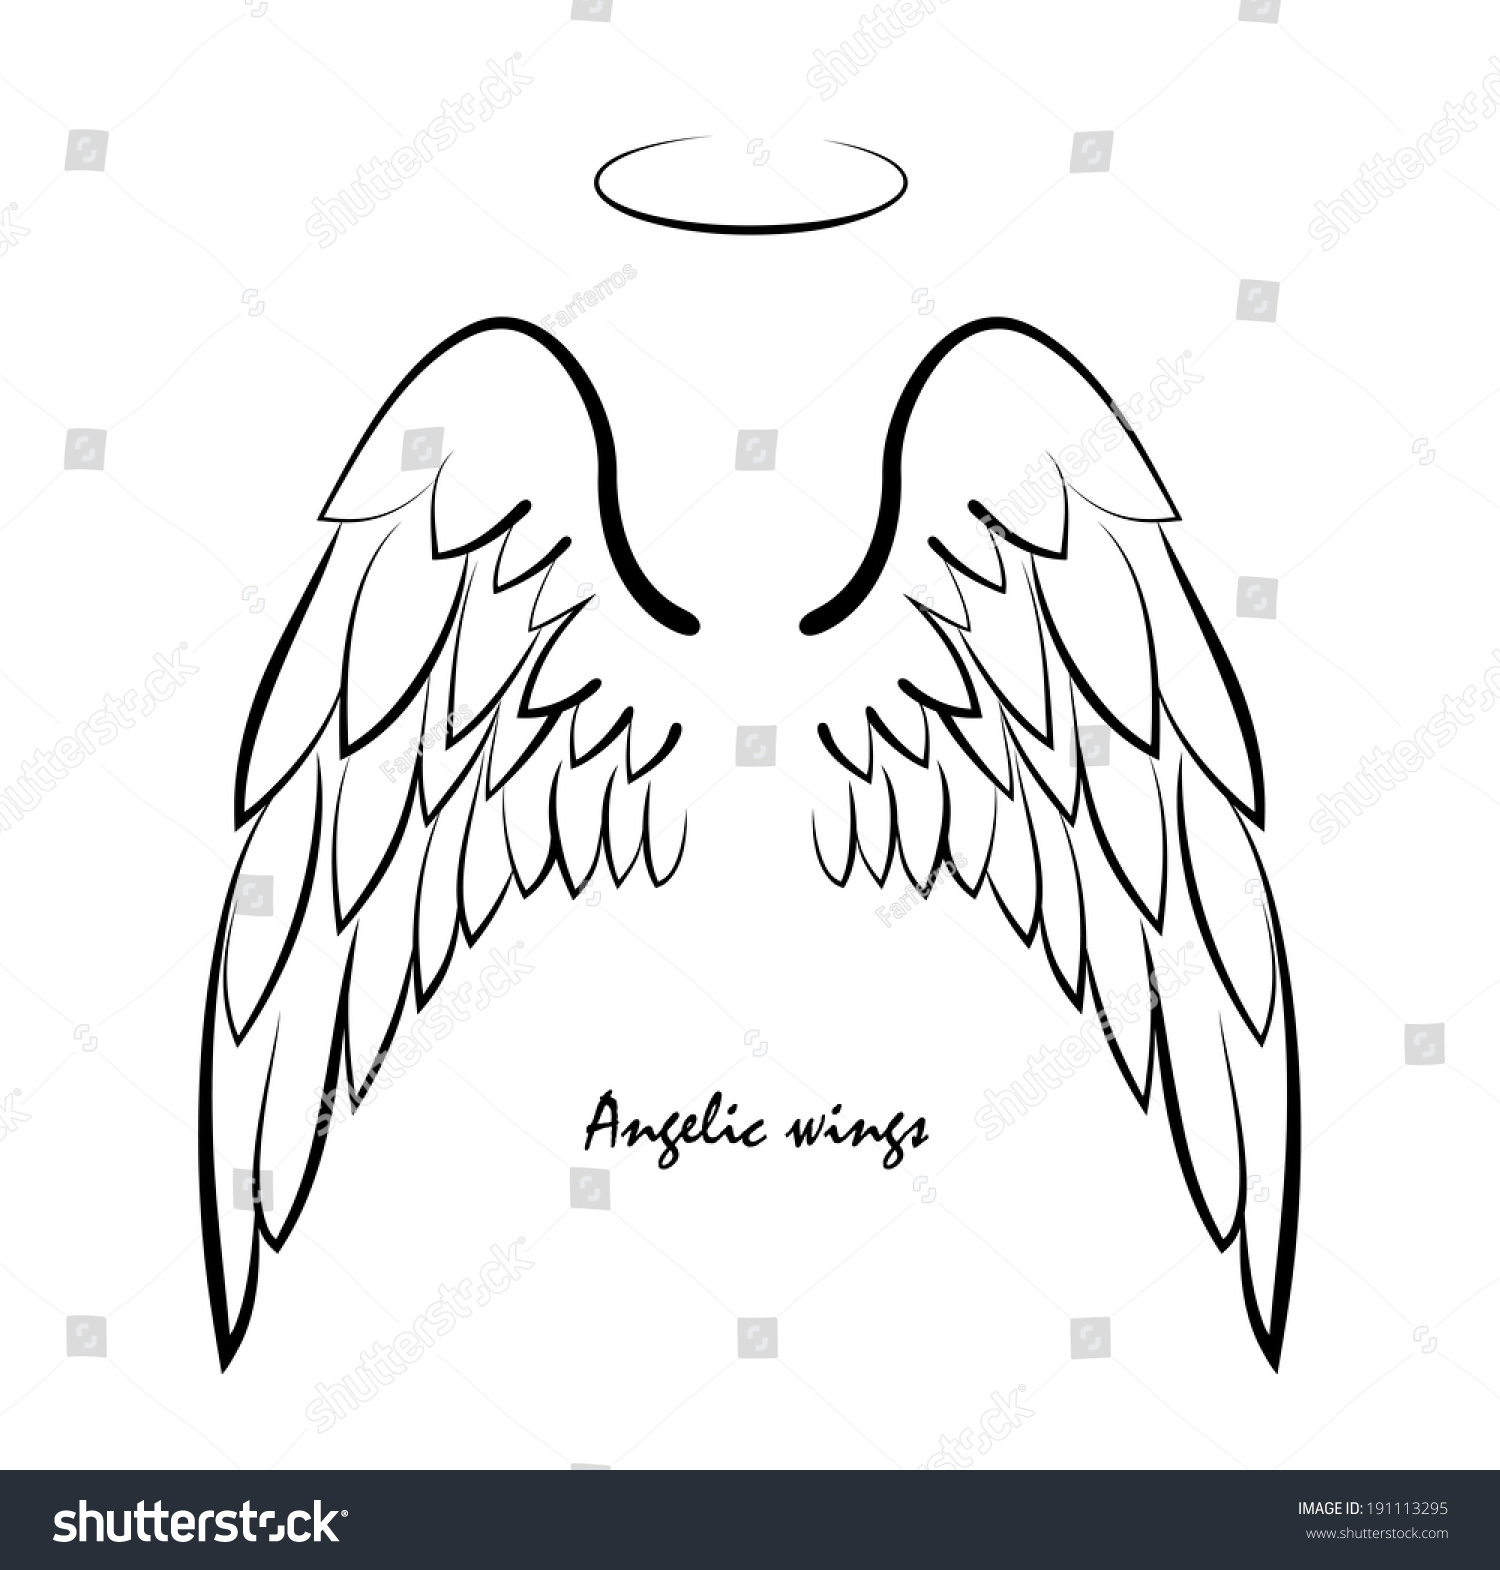 Ангельскими крыльями и нимбом тату